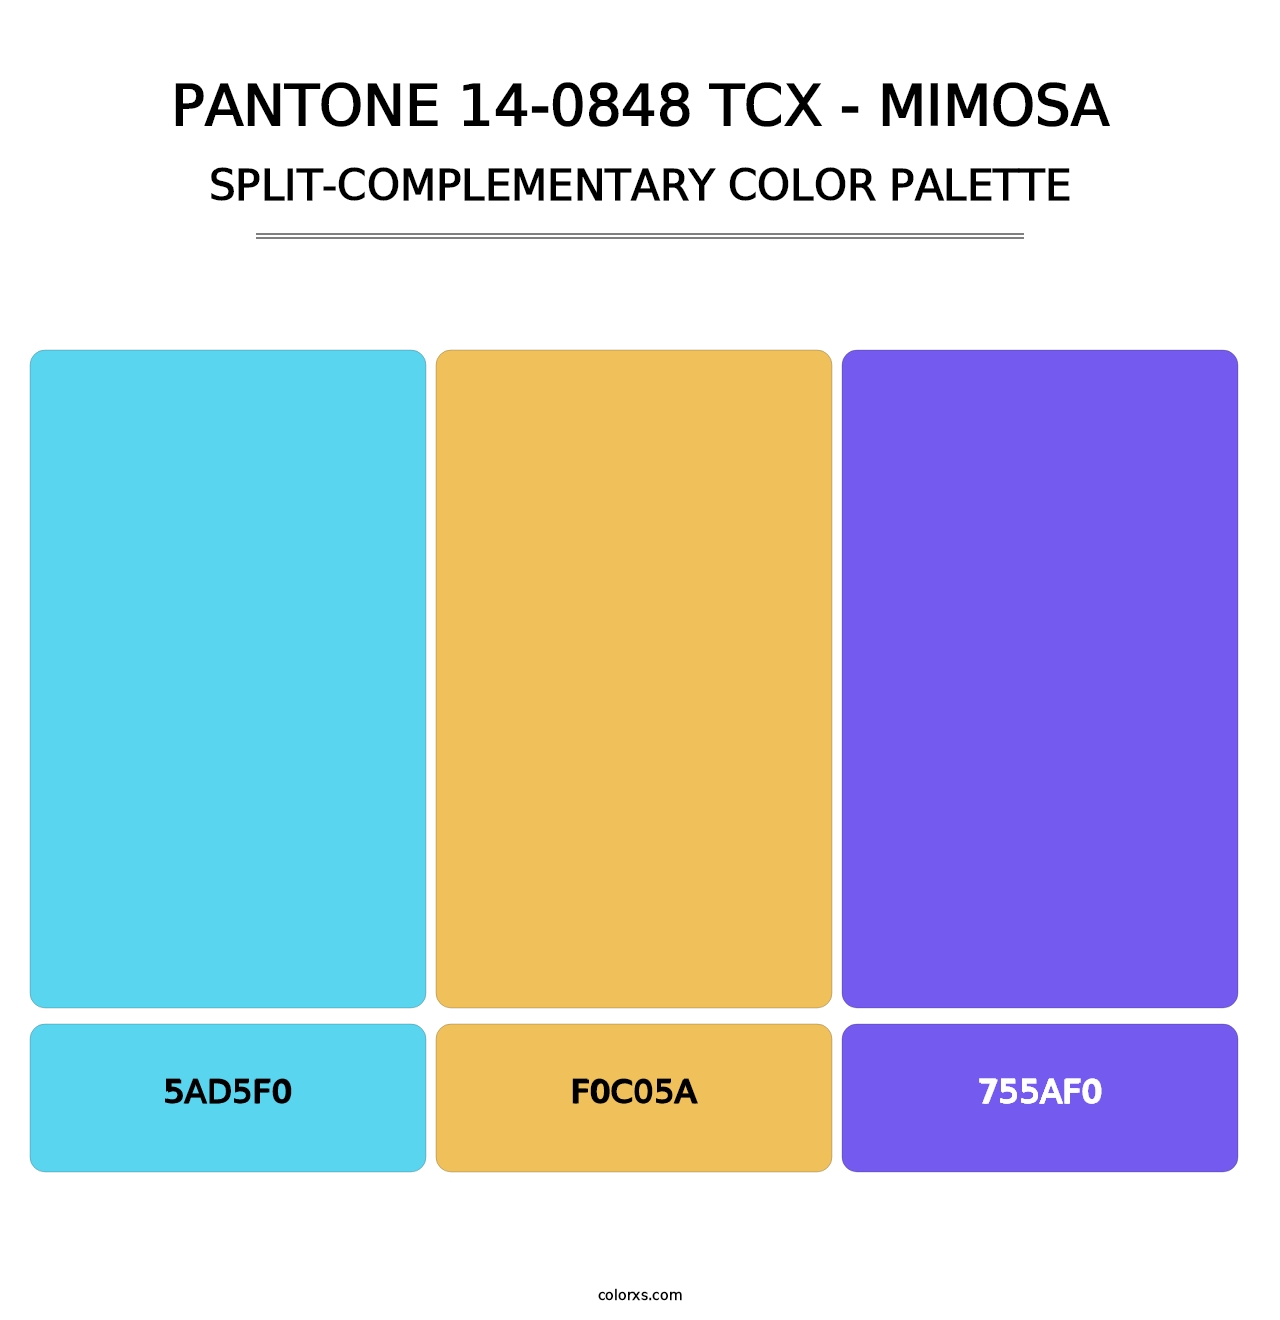 PANTONE 14-0848 TCX - Mimosa - Split-Complementary Color Palette